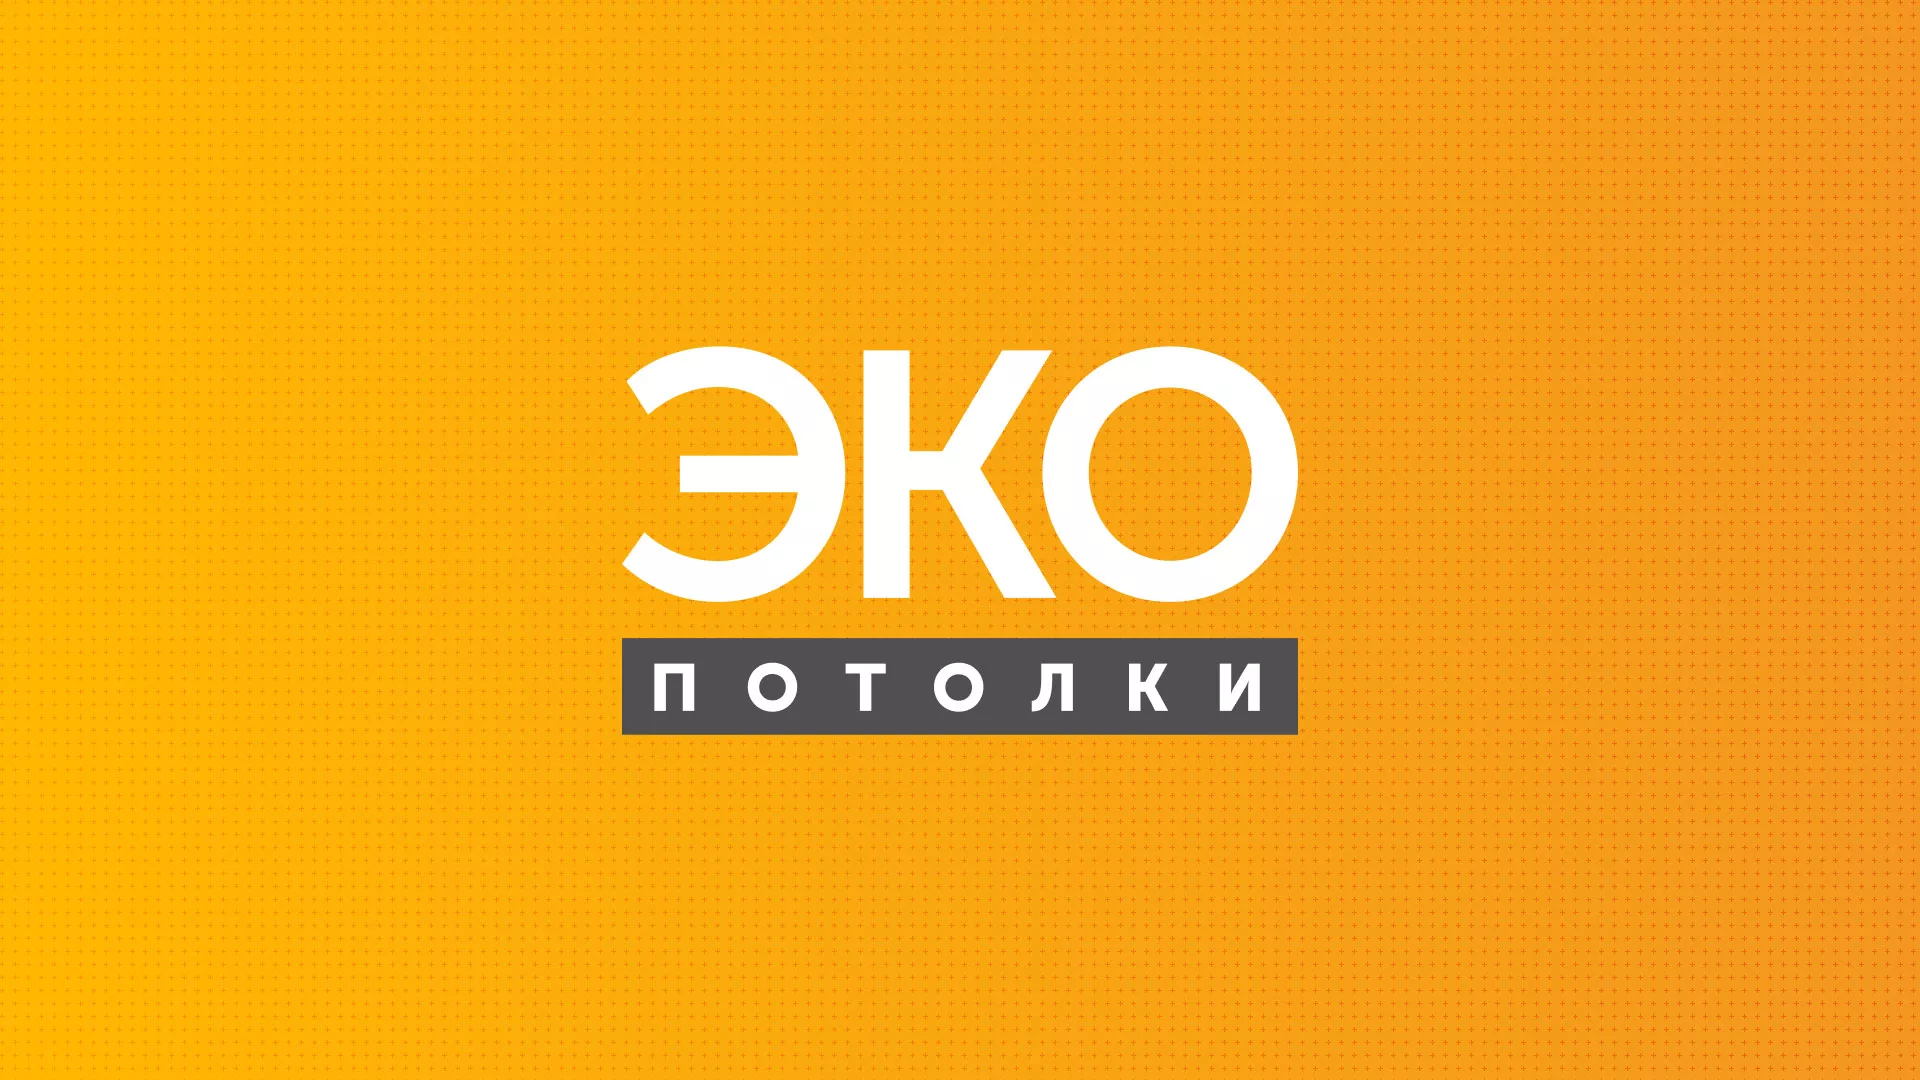 Разработка сайта по натяжным потолкам «Эко Потолки» в Балаково